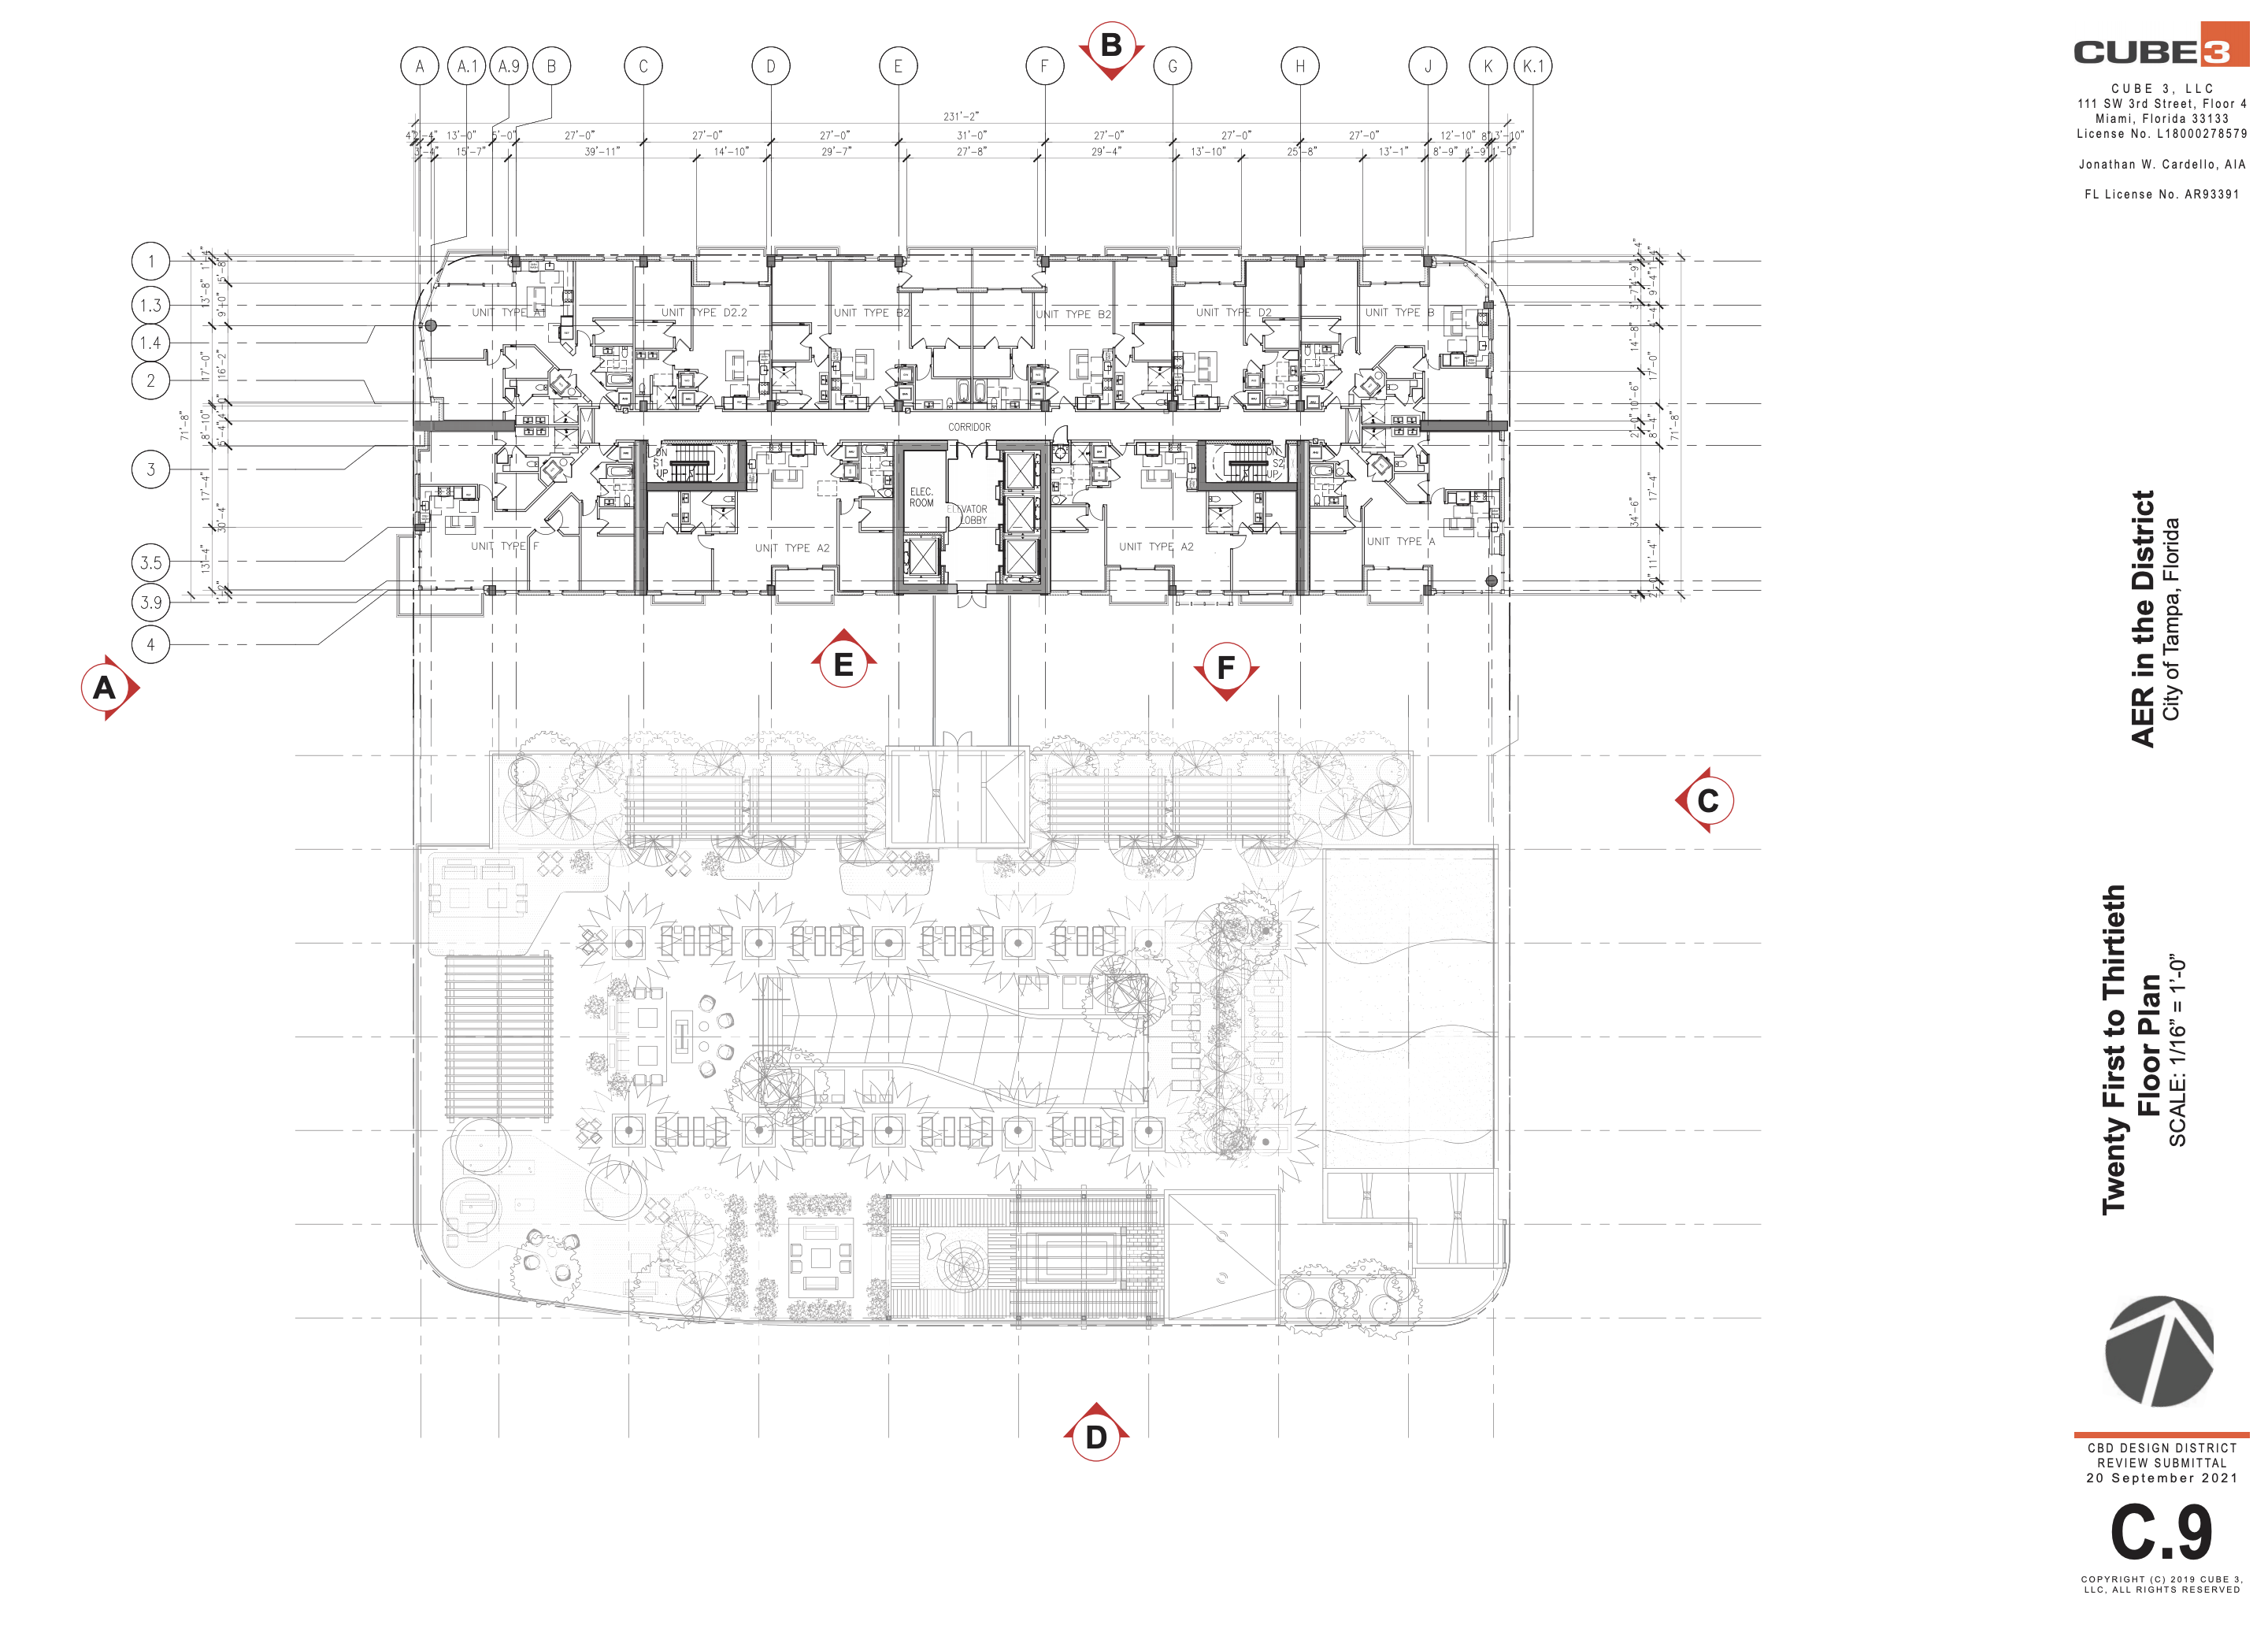 Twenty First - Thirtieth Floor Plan. Courtesy of Cube 3.